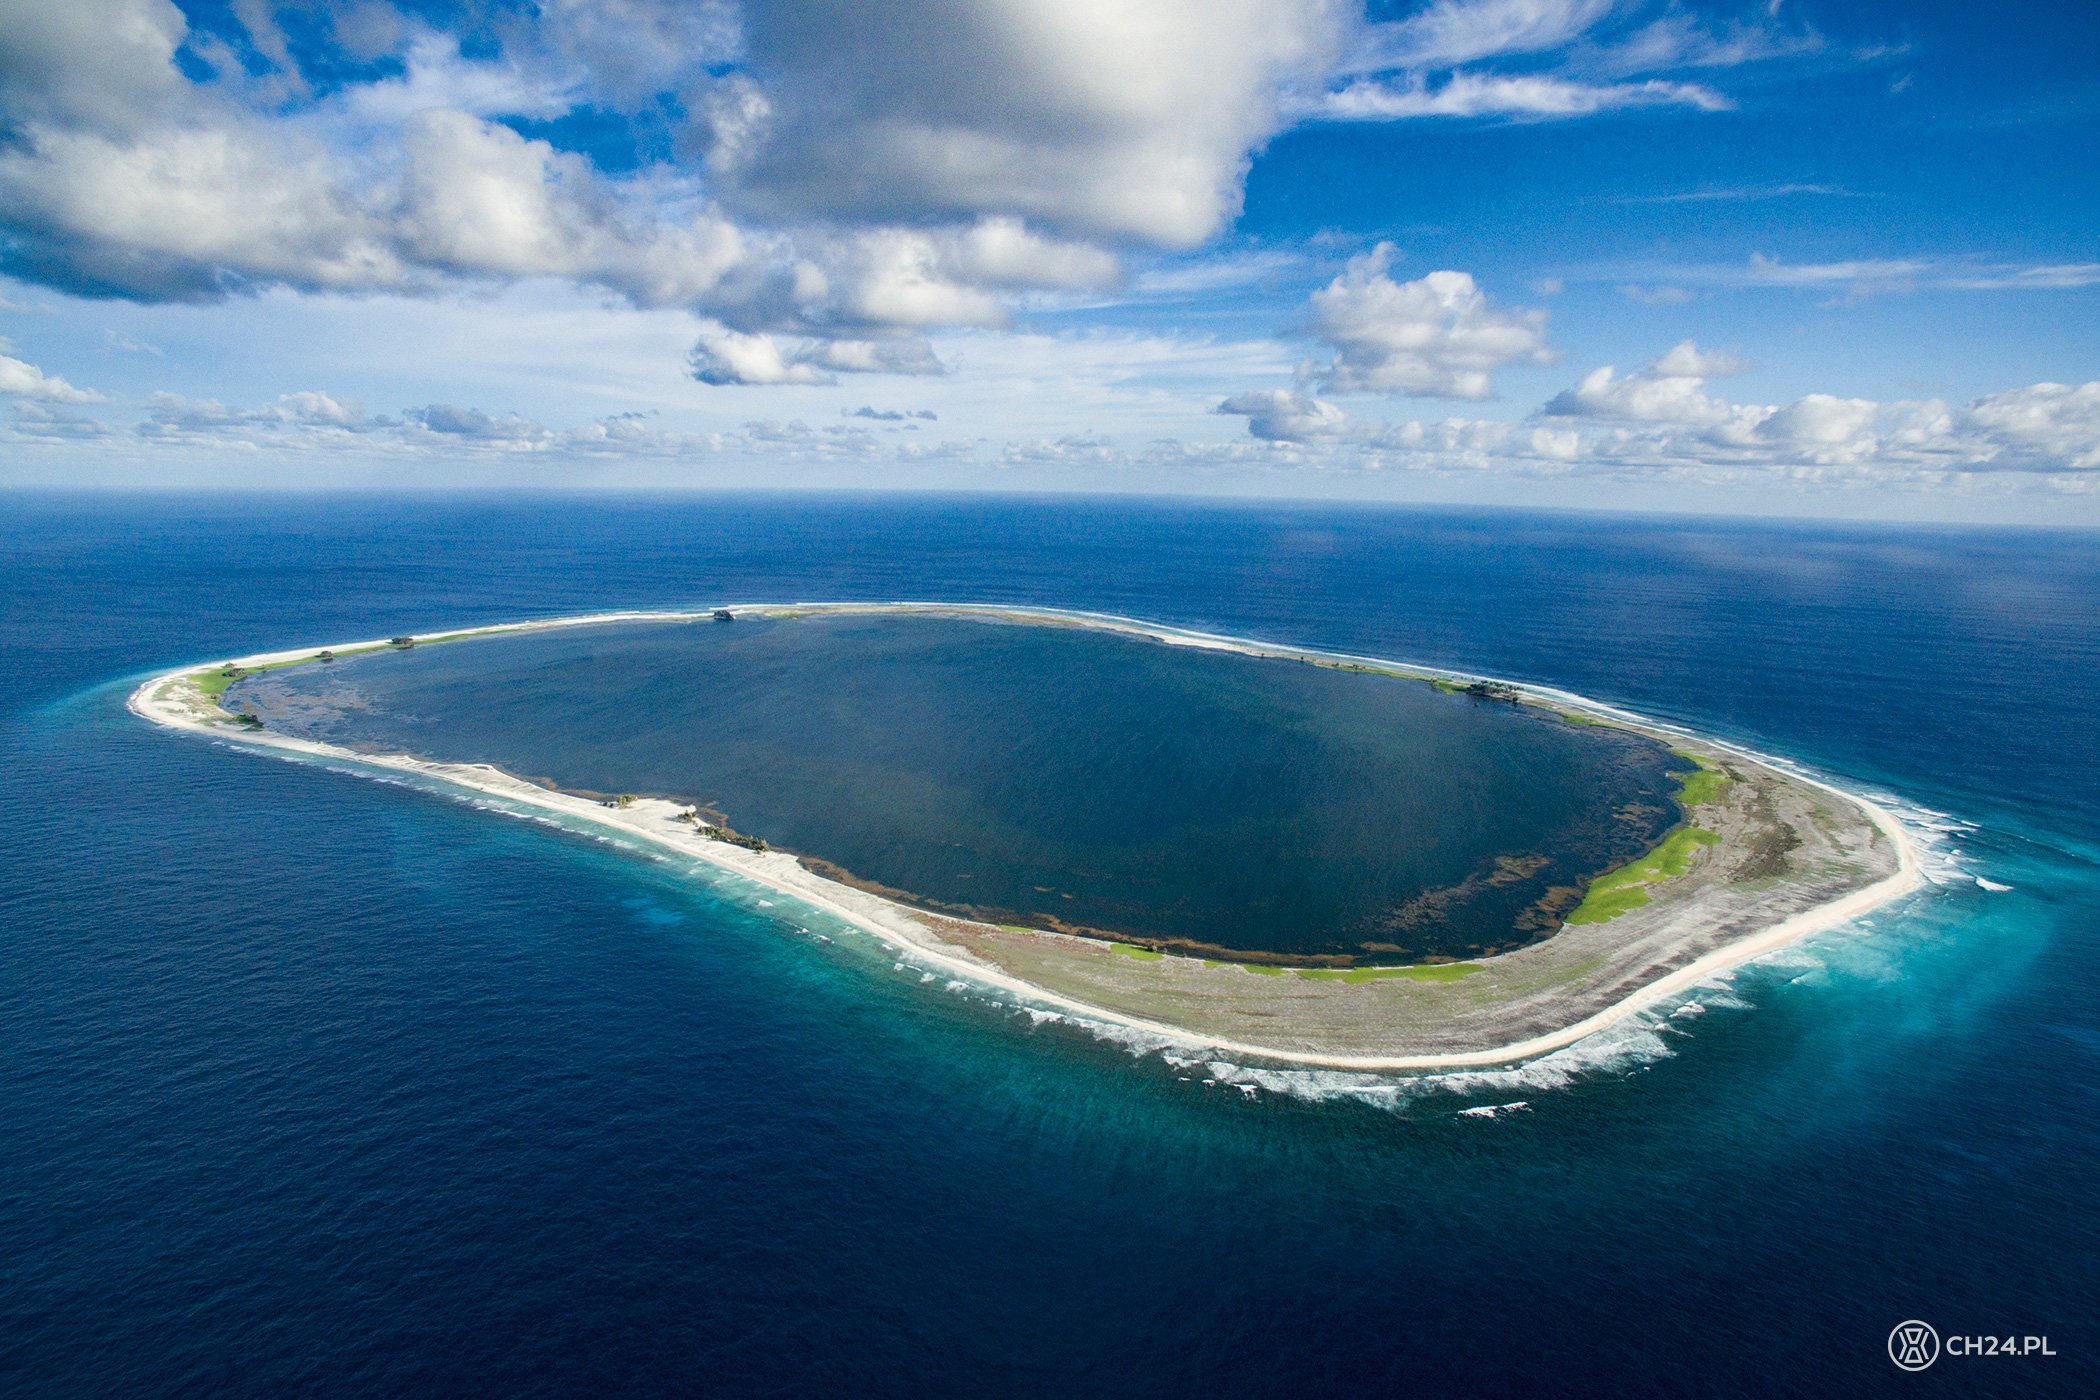 Название островов расположенных в тихом океане. Лагуна острова Клиппертон. Атолл Клиппертон. Лагуна острова Клиппертон, тихий океан. Атолл коралловый остров.